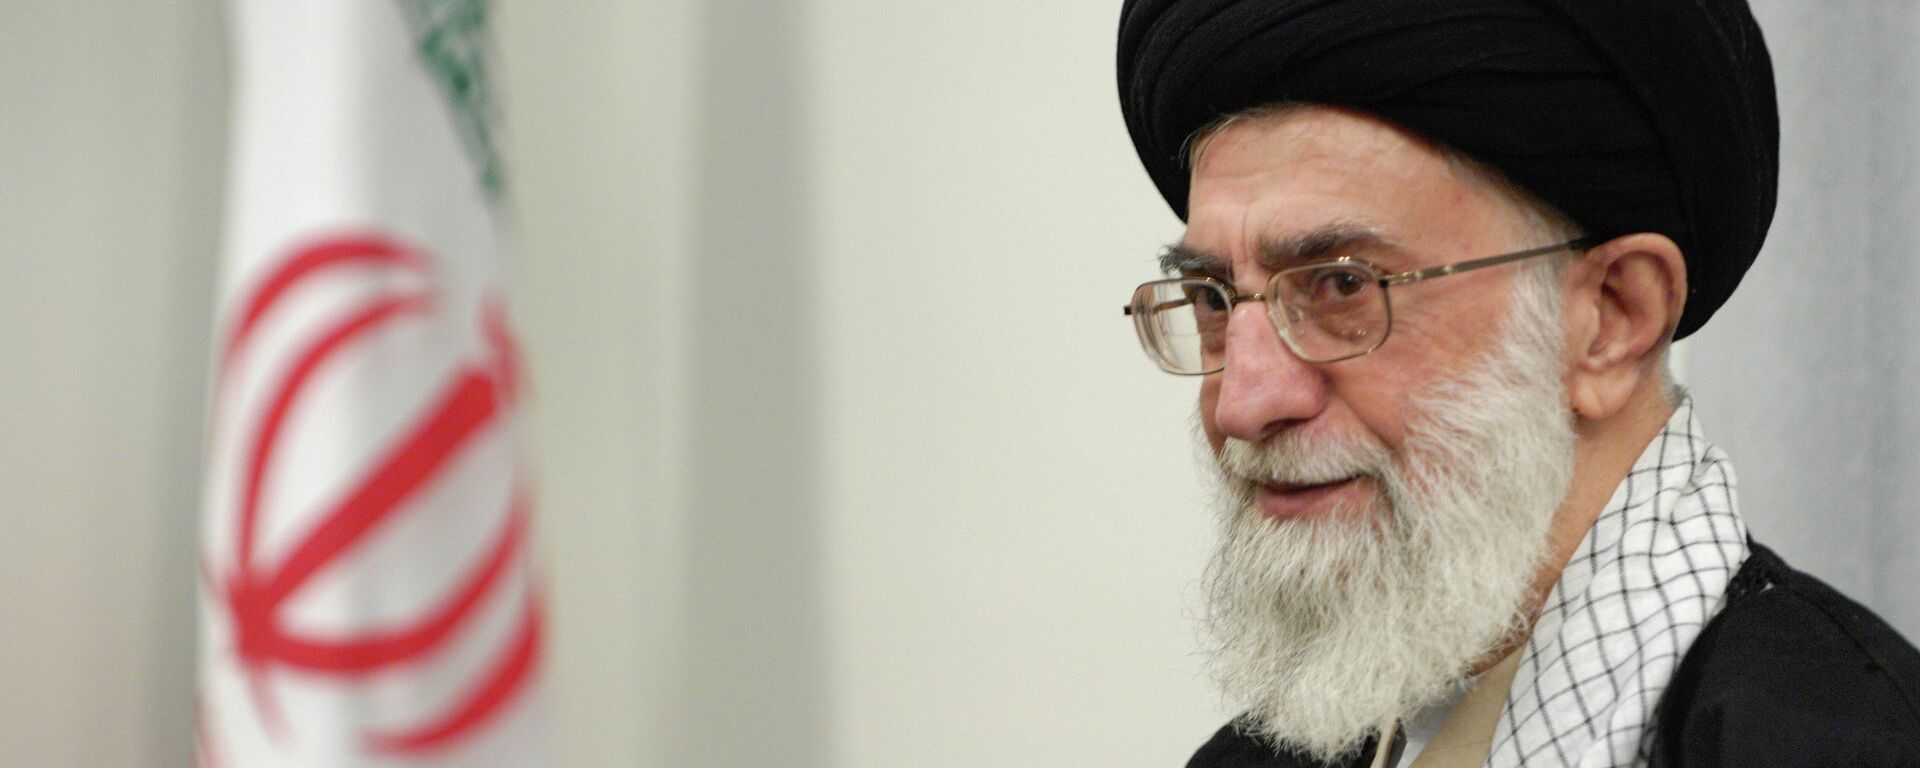 Духовный лидер Ирана аятолла Сейед Али Хаменеи. Архивное фото. - Sputnik Тоҷикистон, 1920, 11.03.2022